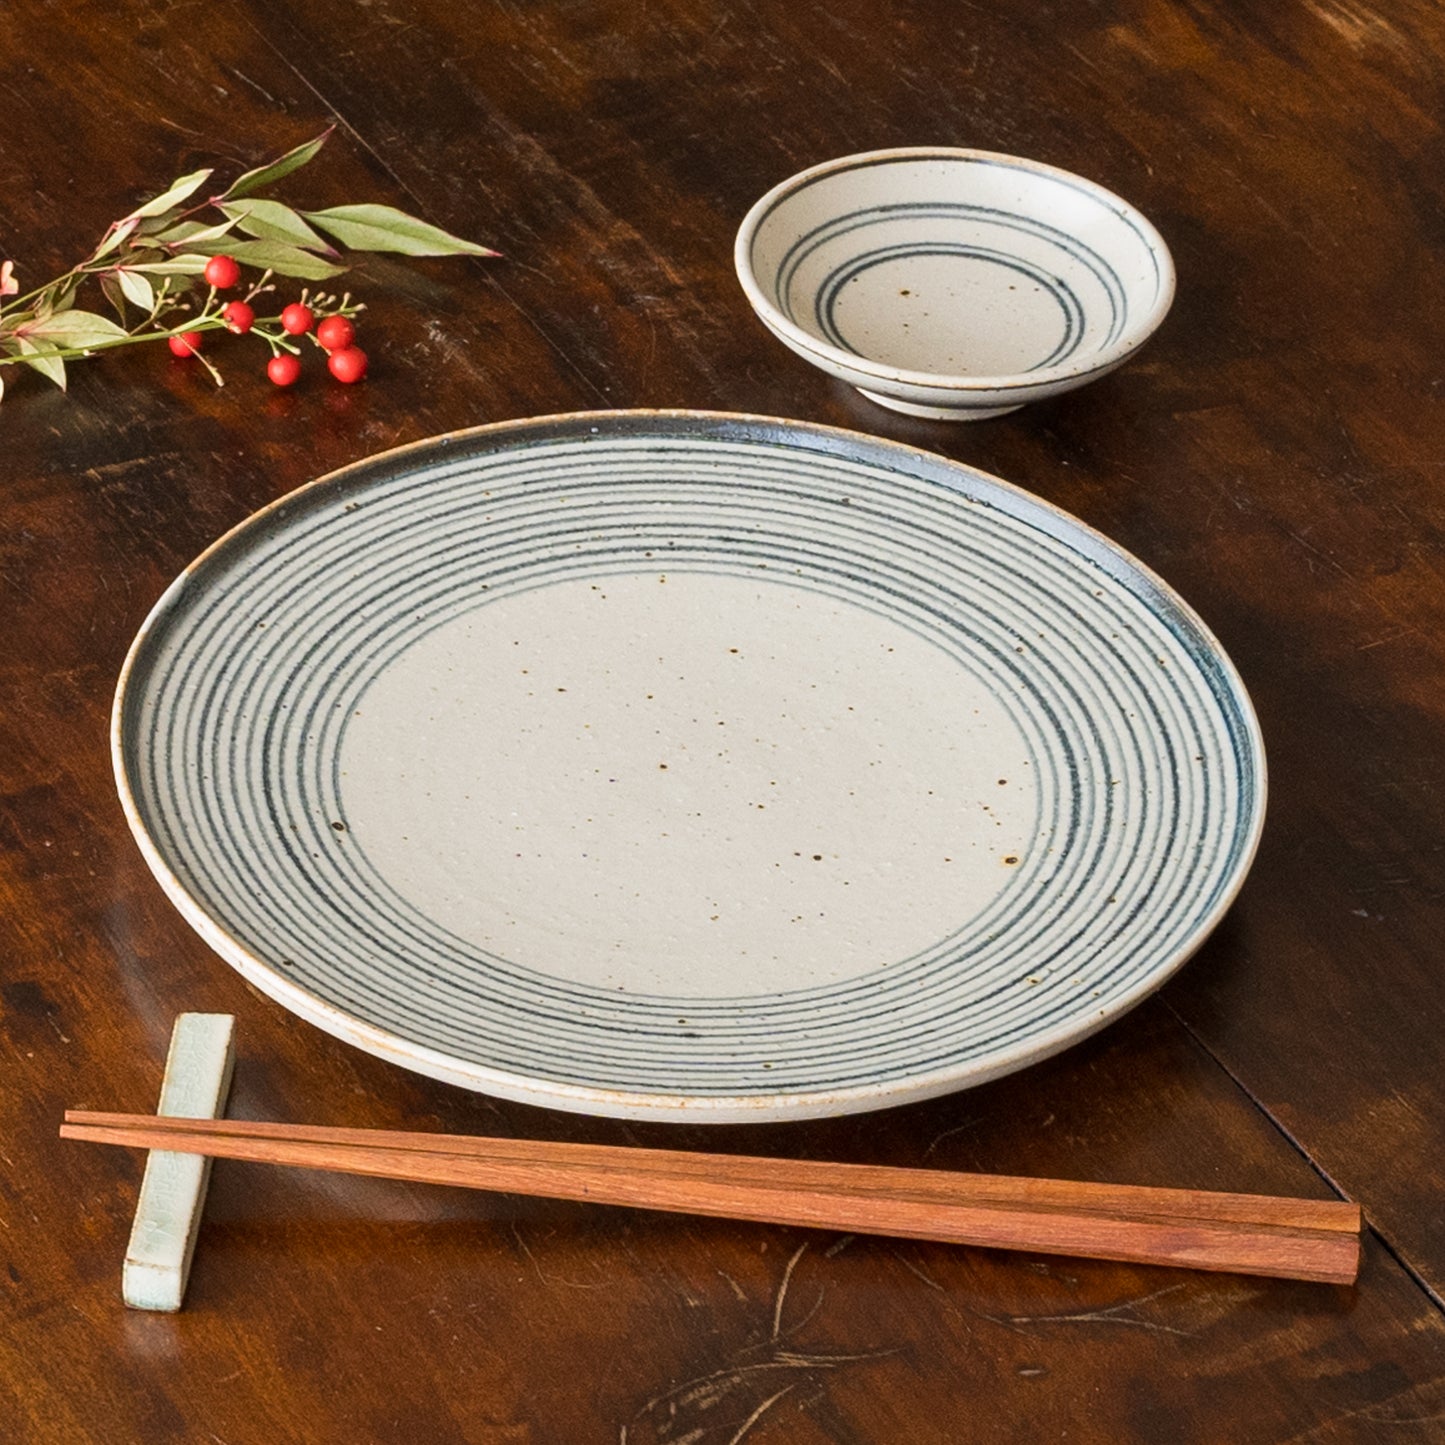 ゆっくり優雅に食事を楽しめる冨本大輔さんの灰釉染付7寸平皿と3寸皿